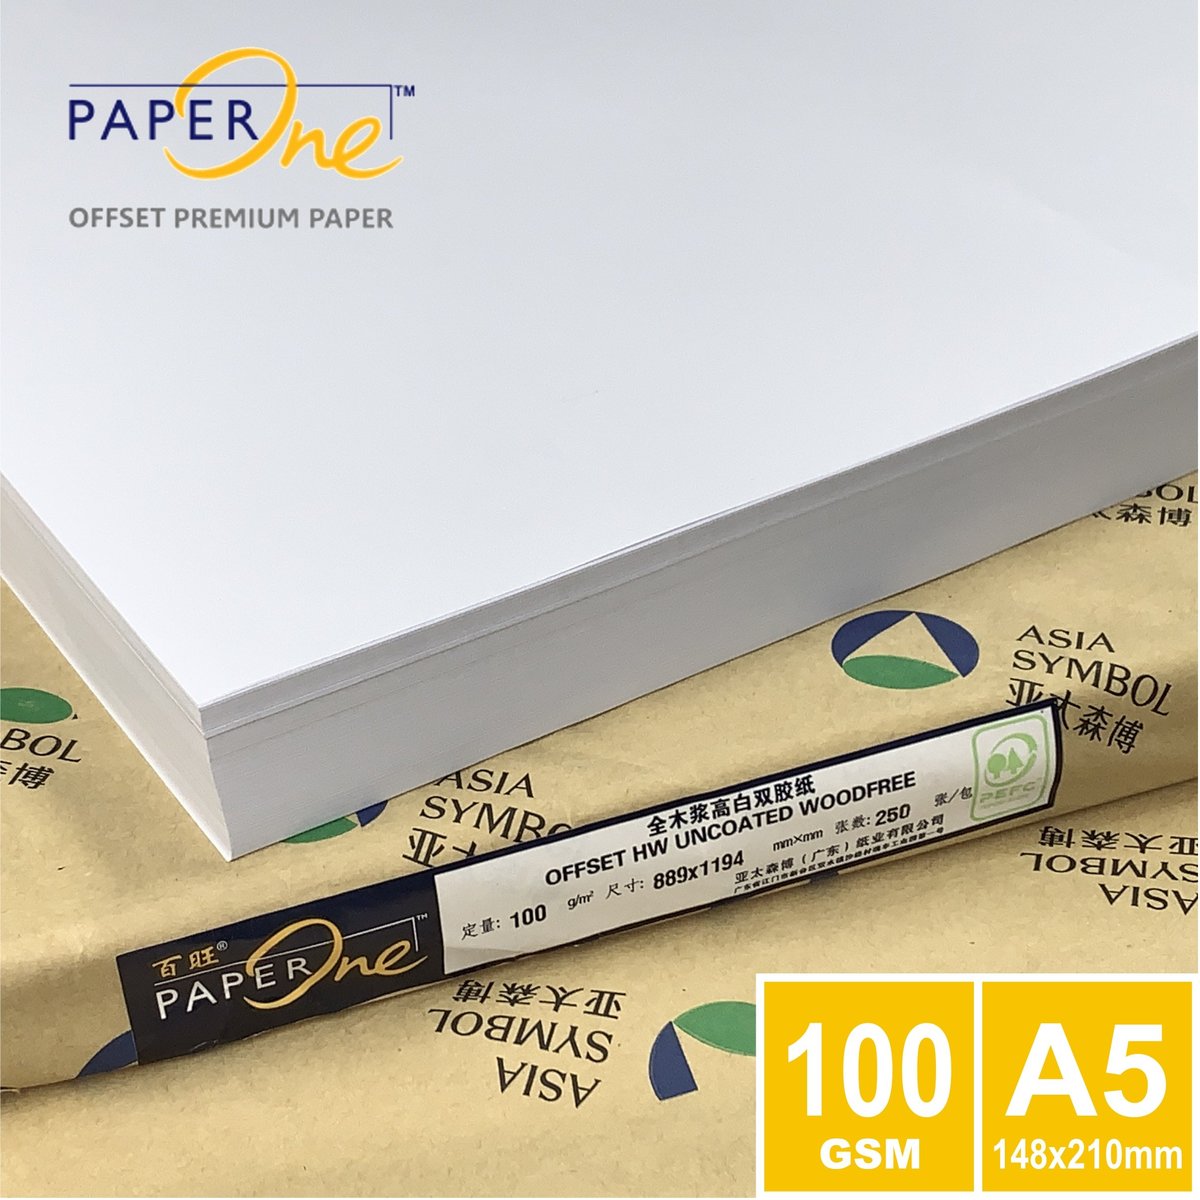 Graan Elektropositief Hechting Paperone | 100克A5 PaperOne™ Offset Premium 白影印紙(1,000張) | HKTVmall 香港最大網購平台